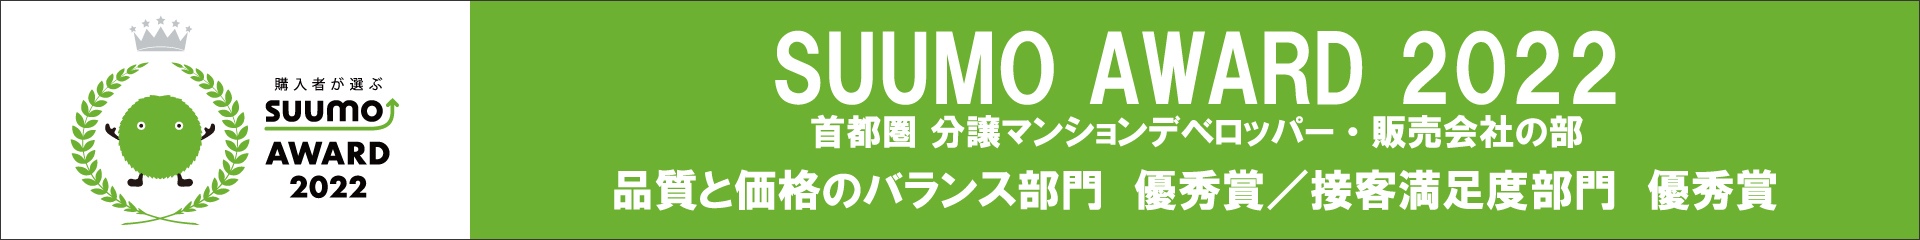 SUUMO AWARD 2022